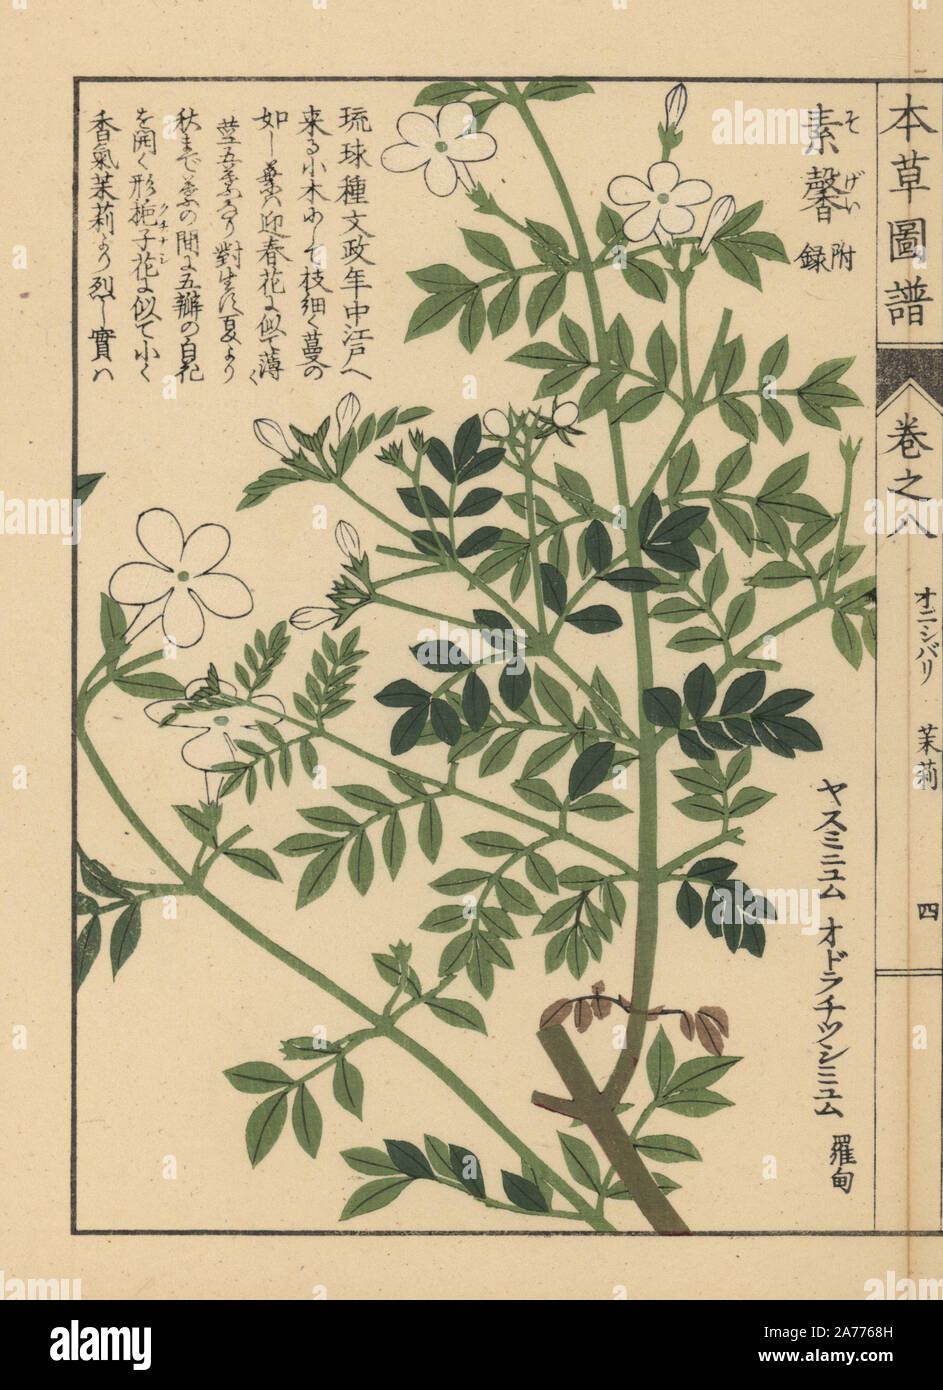 Lo spagnolo gelsomino, Jasminum grandiflorum. Stampato a colori woodblock incisione di Kan'en Iwasaki da 'Honzo Zufu", una guida illustrata per piante medicinali, Giappone, 1884. La Iwasaki (1786-1842) era un giapponese botanico, entomologo e zoologo. Egli è stato uno dei primi botanici giapponesi per incorporare la conoscenza occidentale nei suoi studi. Foto Stock